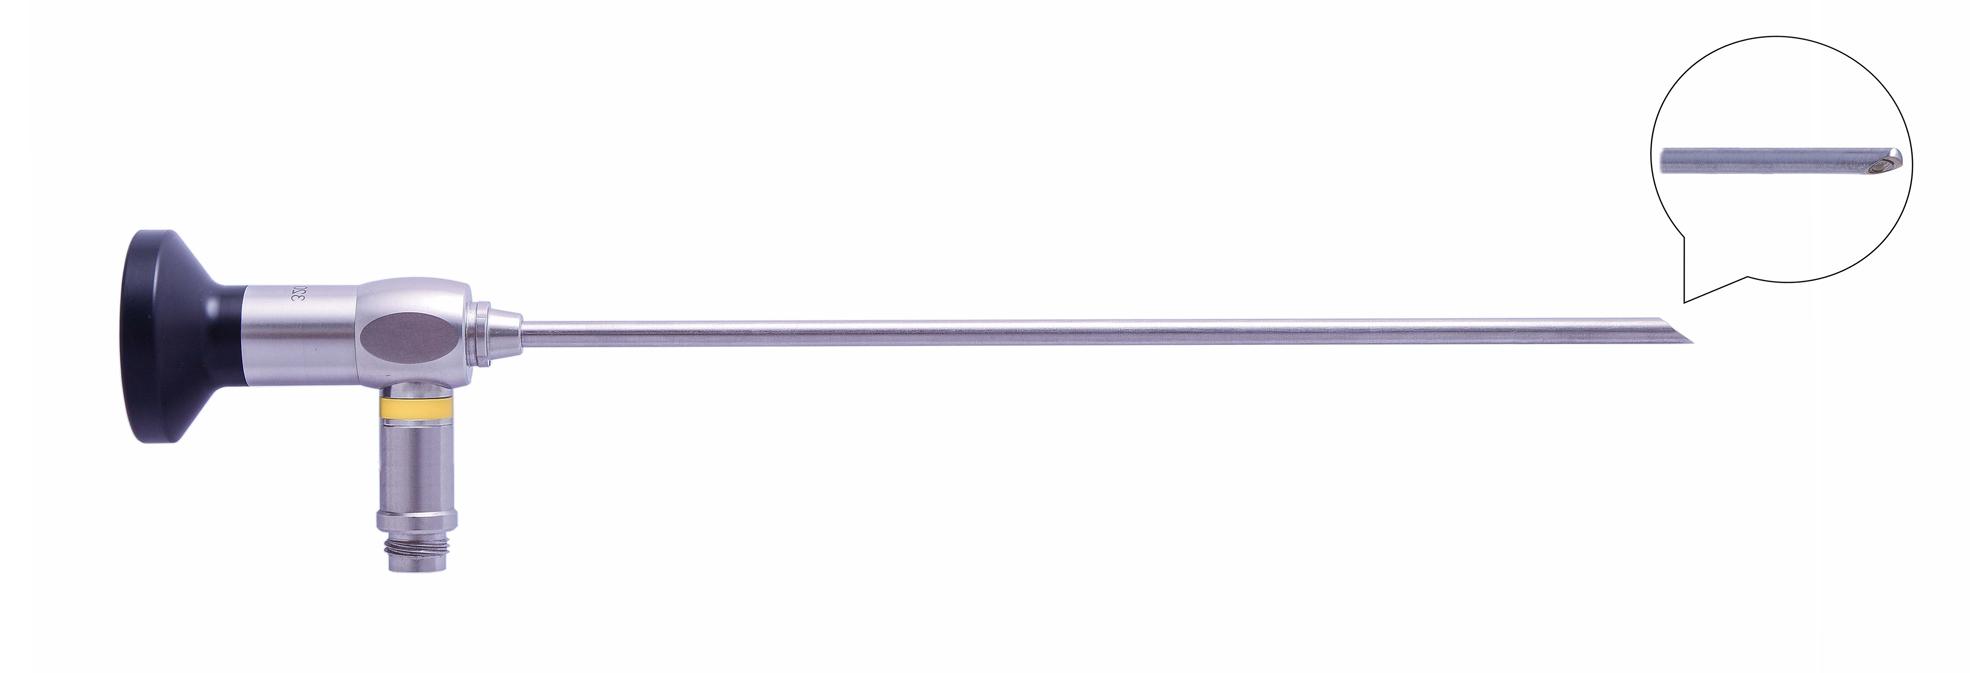 Трубка оптическая (артроскопическая, риноскопическая) ТОАР-007 диам. 2.7 мм, с углом наблюдения 70 гр.